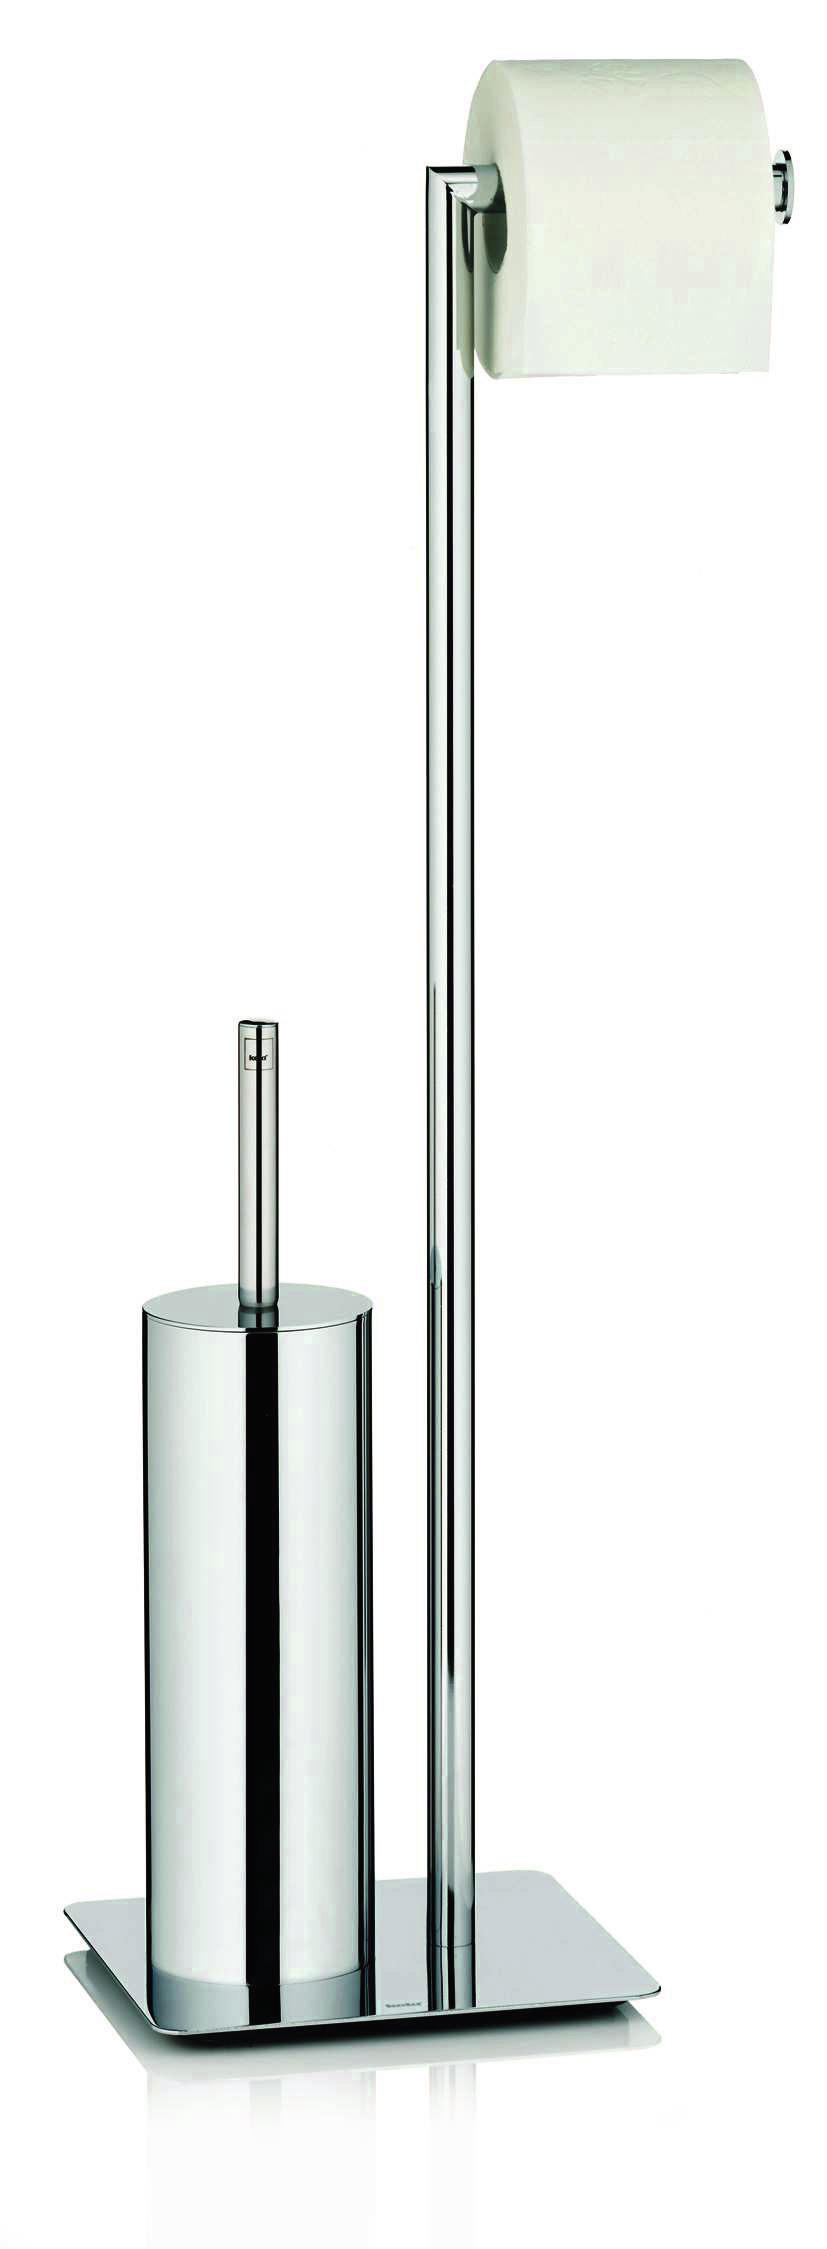 WC-BÜRSTENGARNITUR - Basics, Kunststoff/Metall (20/20/71cm) - Kela